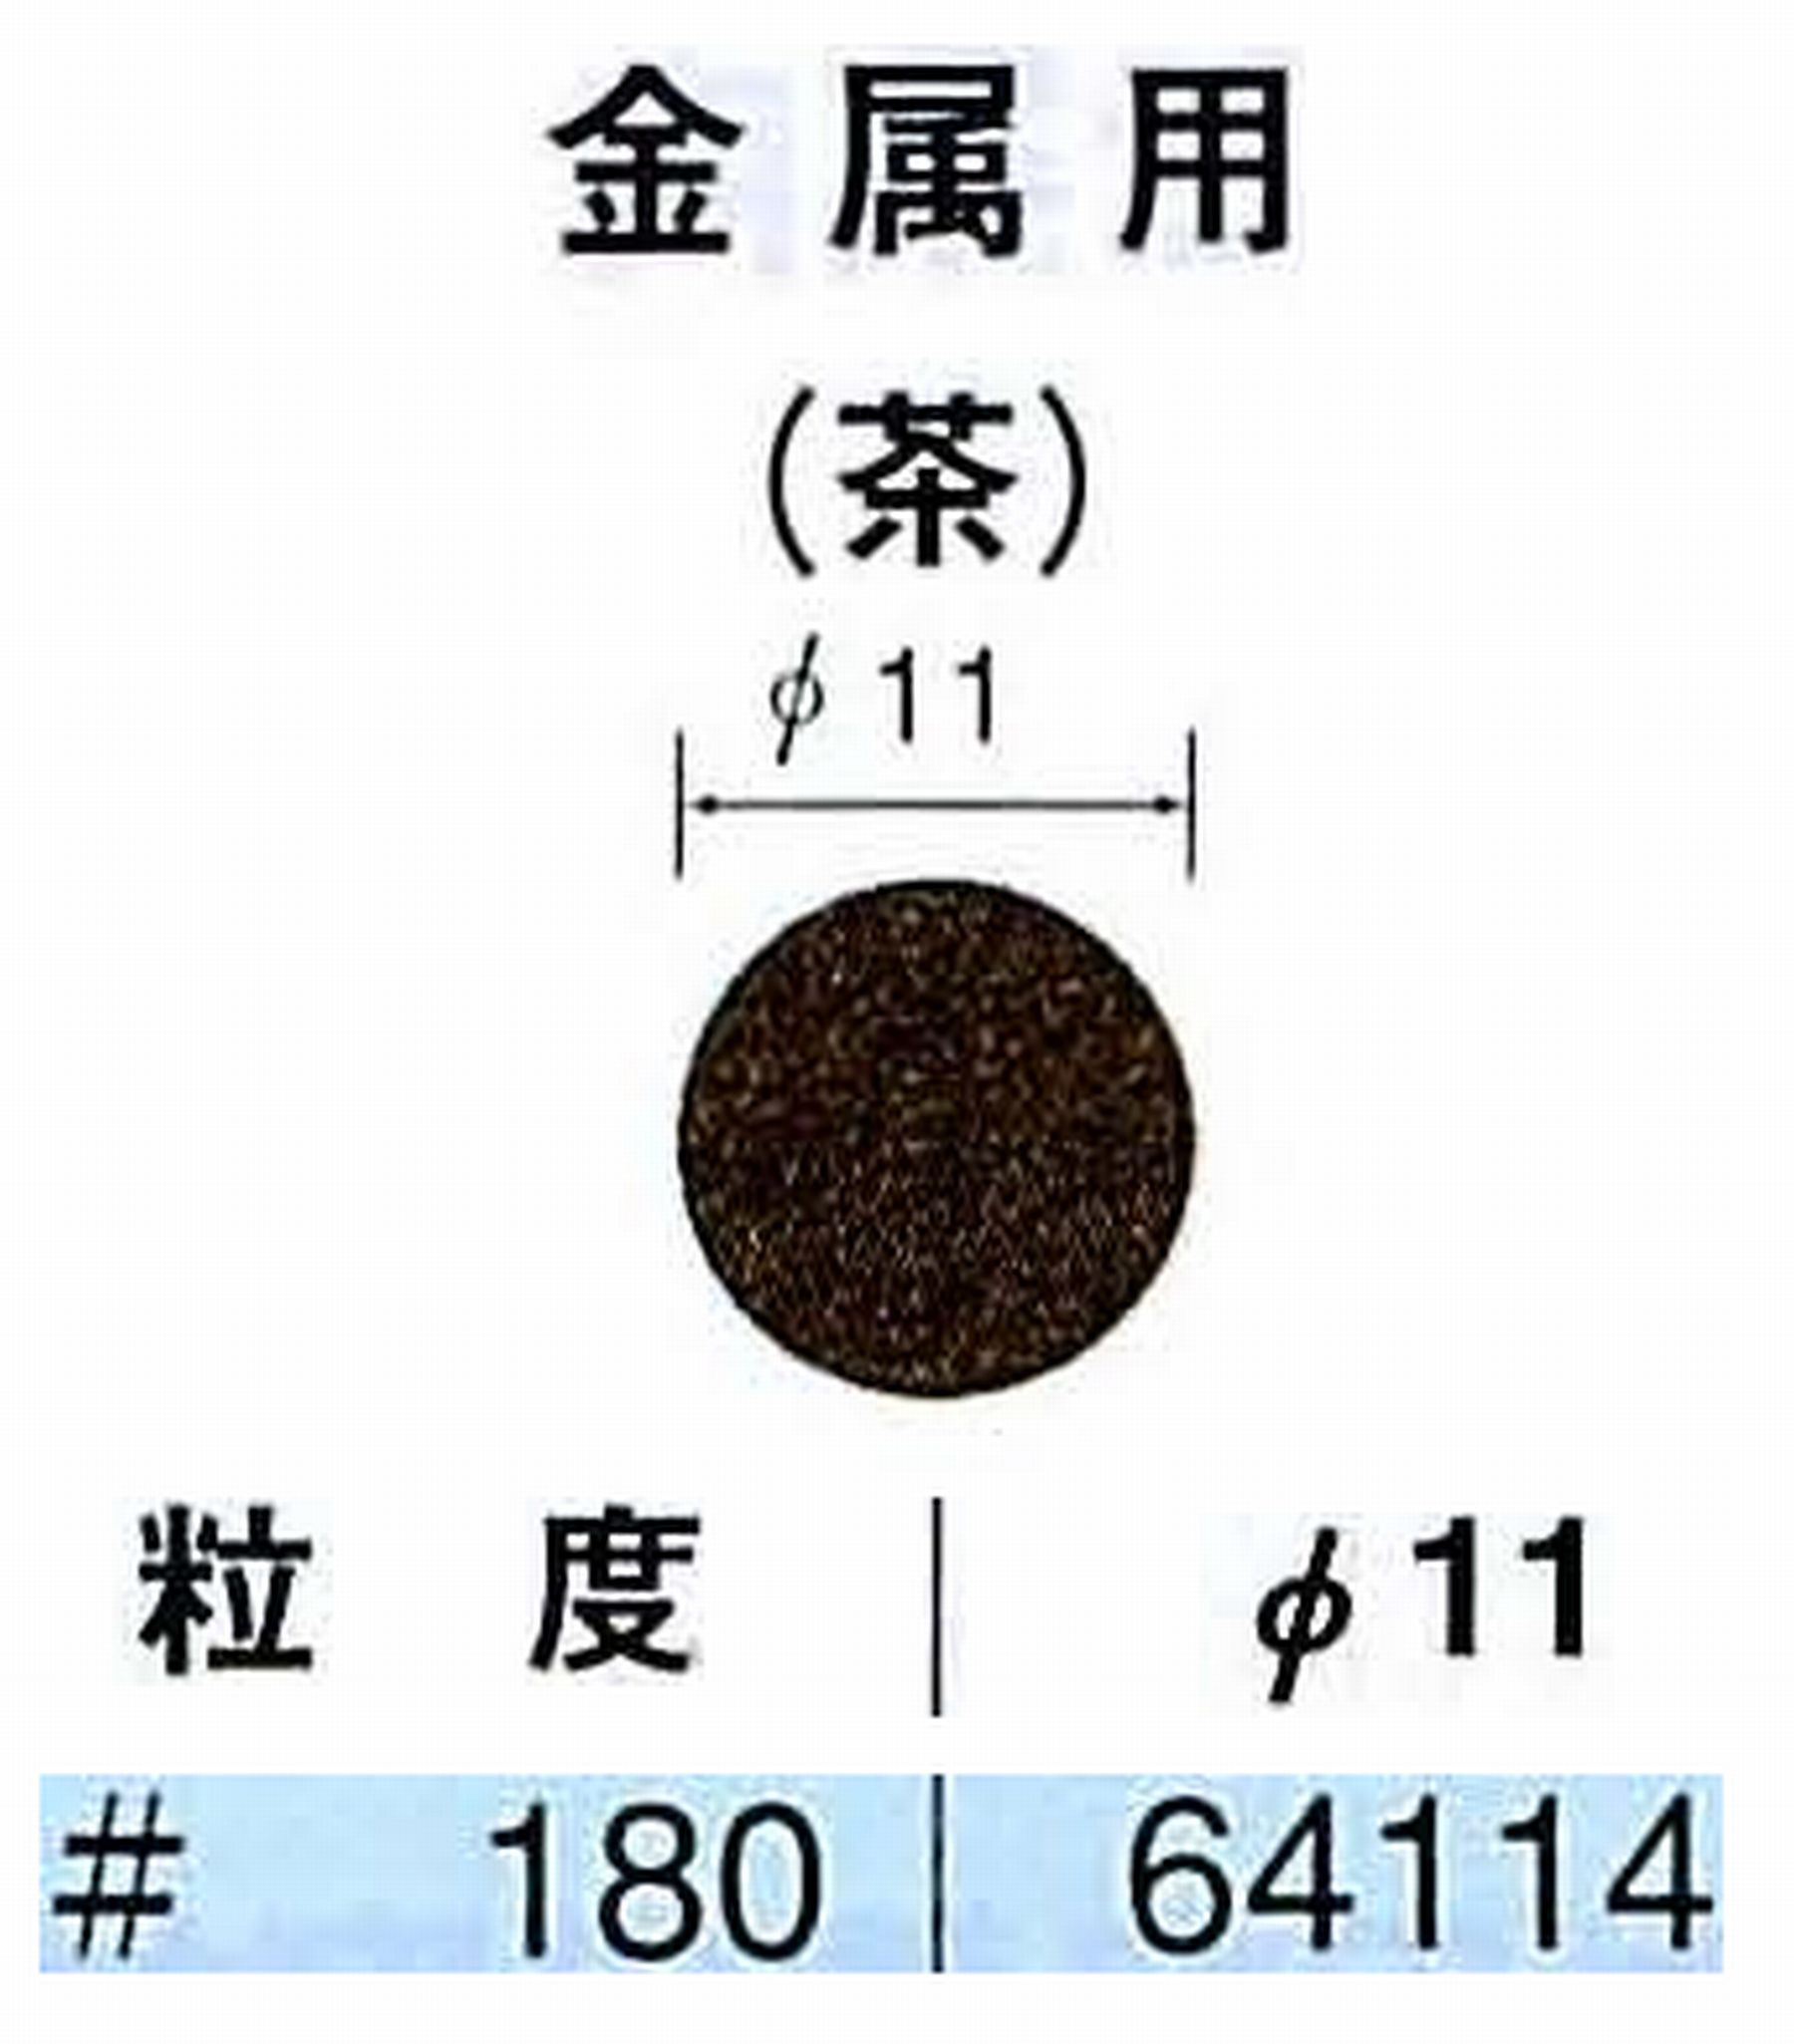 ナカニシ/NAKANISHI アングルグラインダ(電動・エアー) アングルアタッチメント専用工具 サンドペーパーディスク(布基材タイプ)裏面のり処理 64114